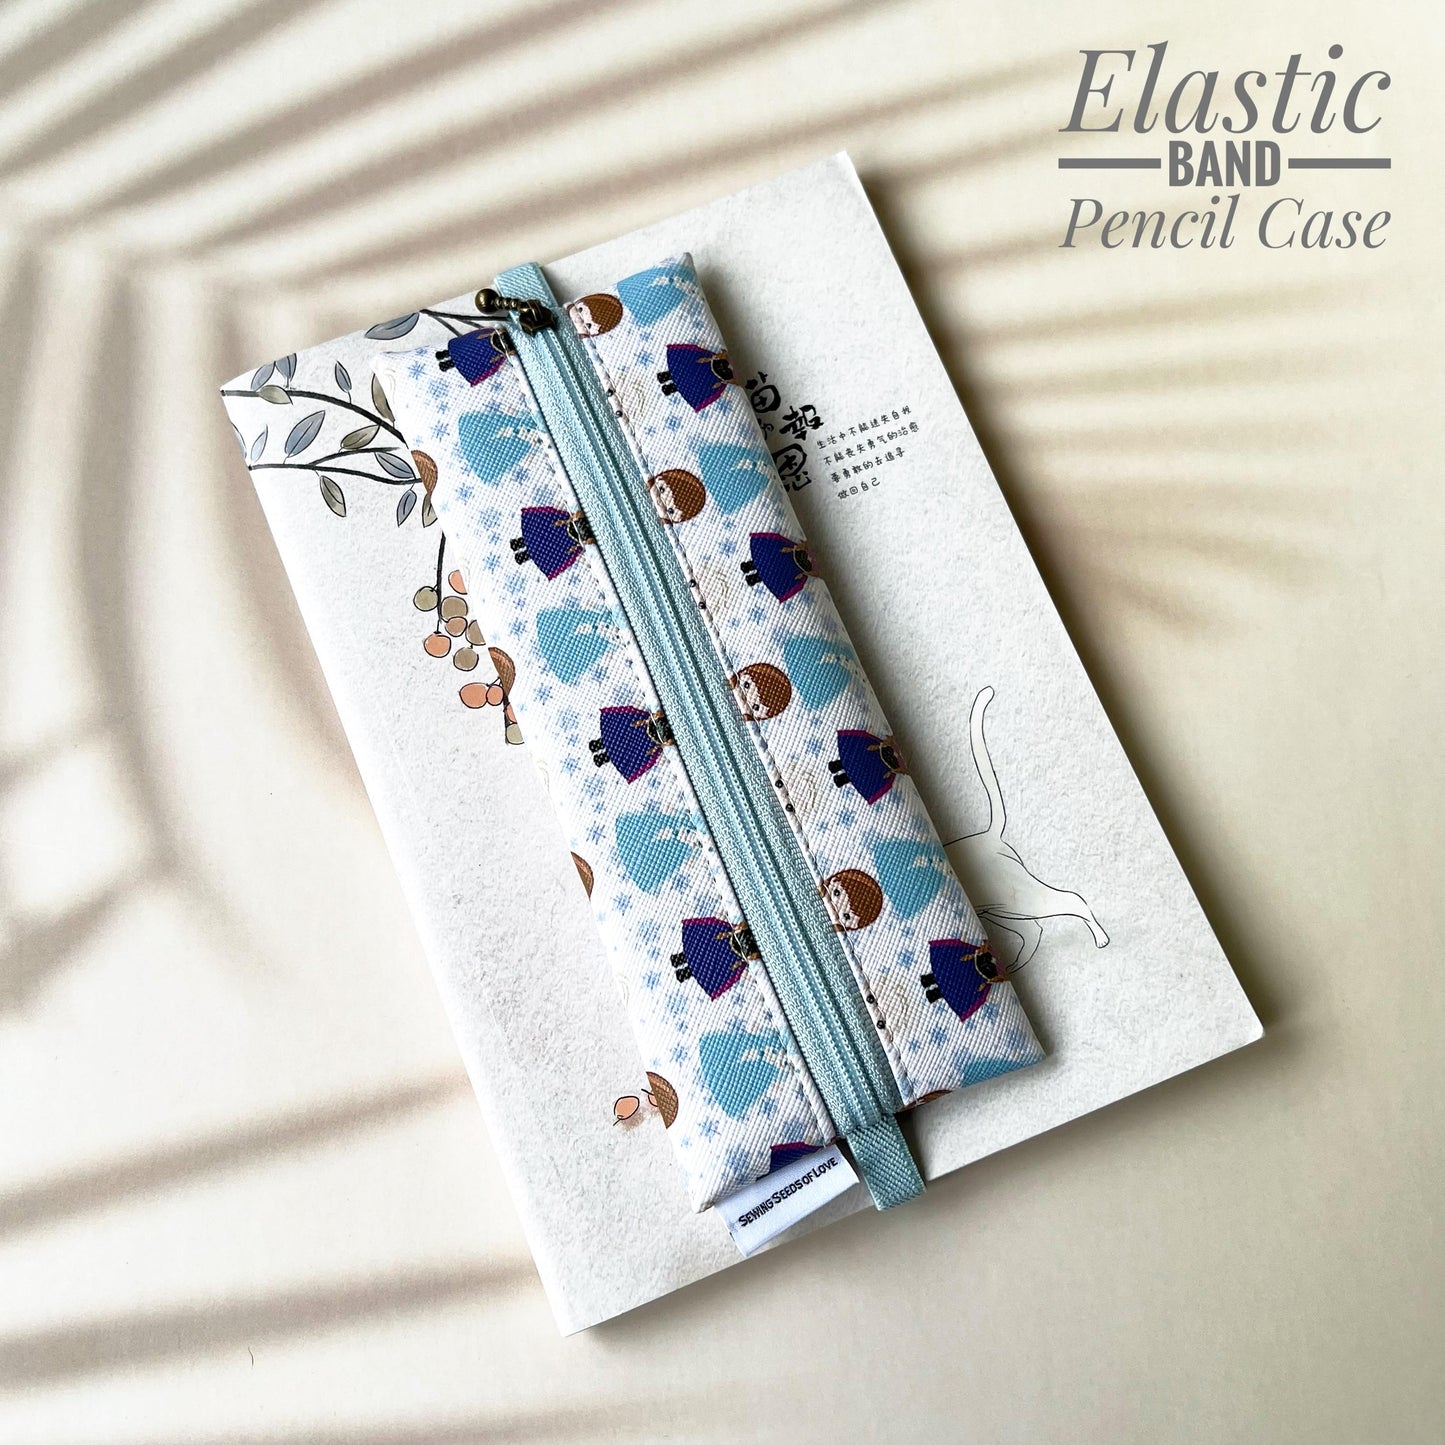 Elastic Band Pencil Case - EBPC26